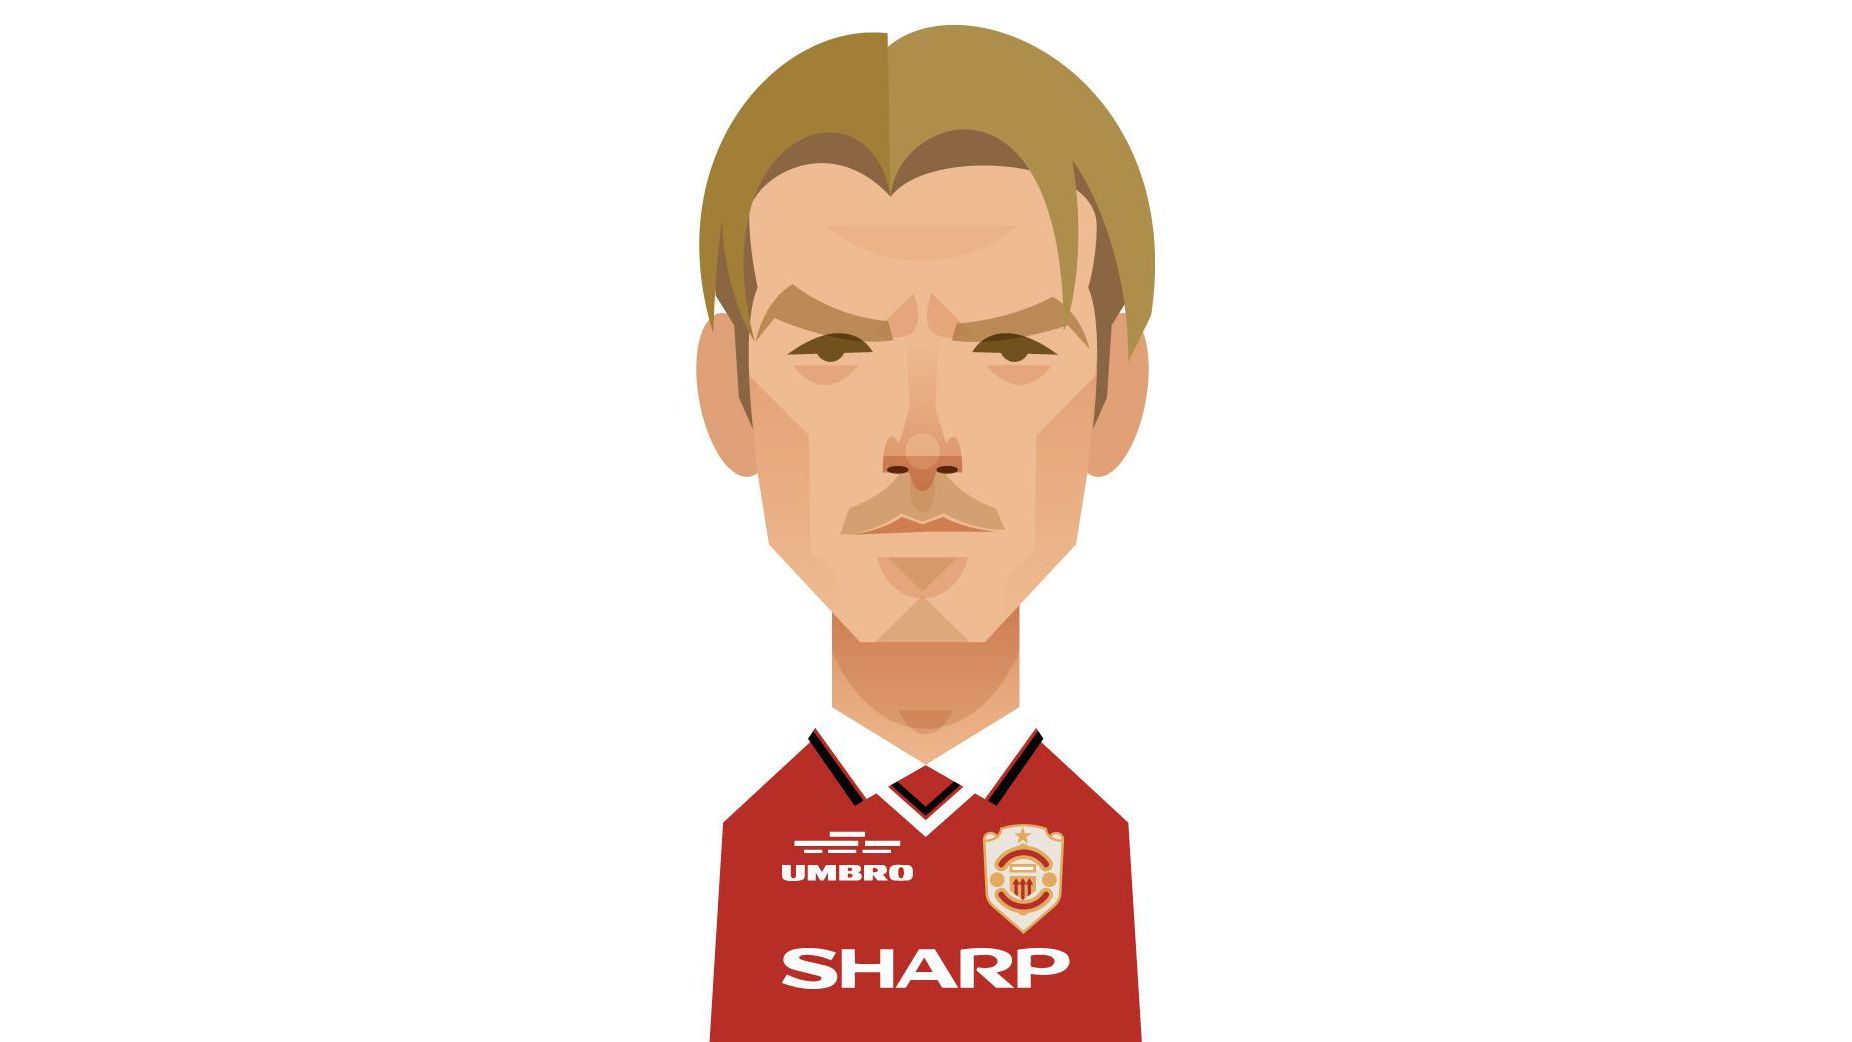 Treble Icons Man Utd profile of David Beckham | Manchester United